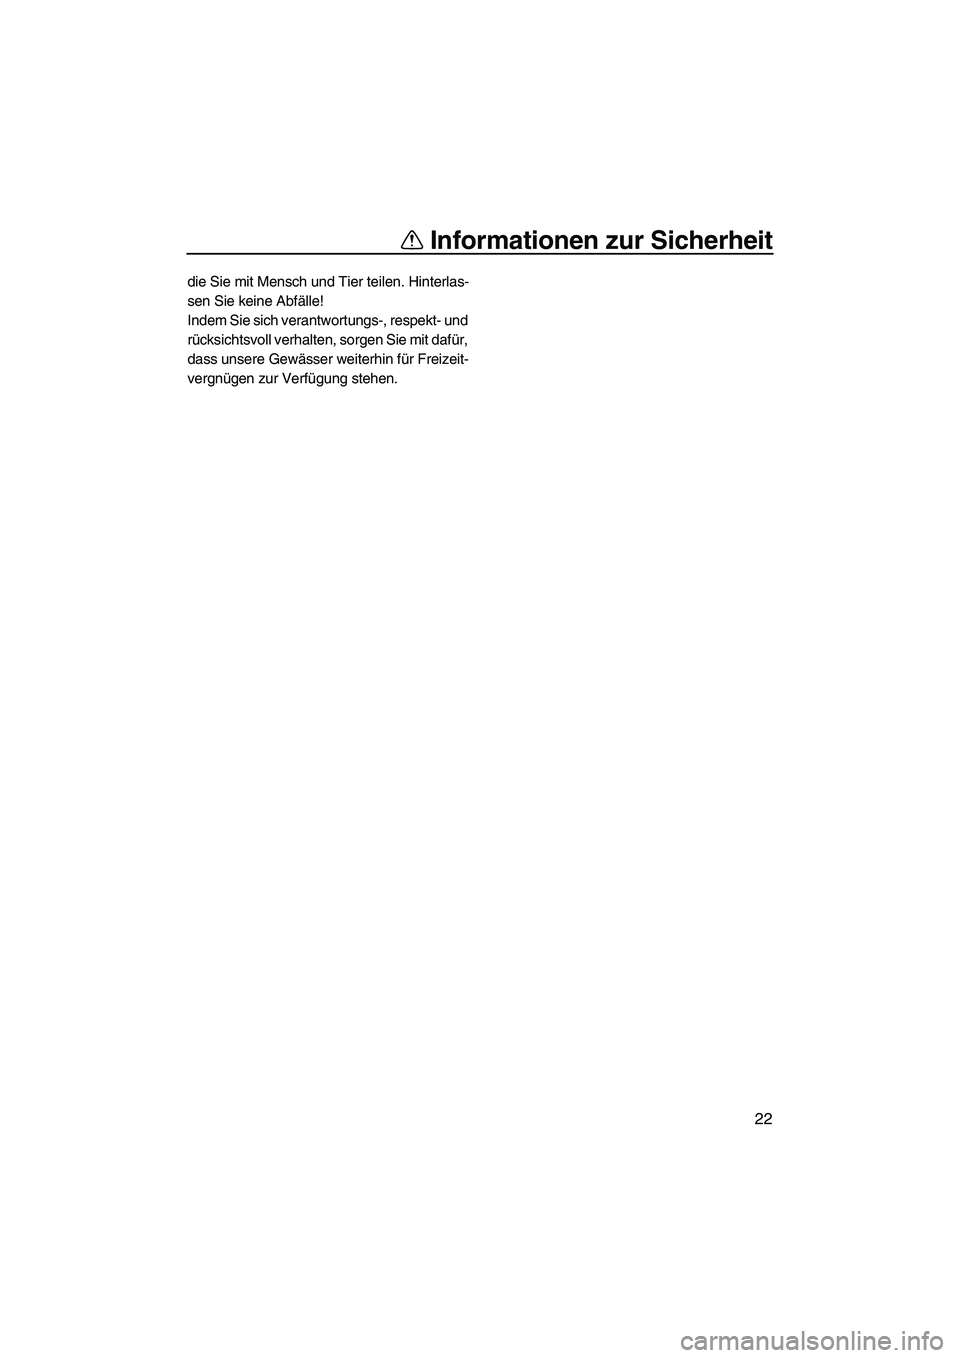 YAMAHA VX 2007  Betriebsanleitungen (in German) Informationen zur Sicherheit
22
die Sie mit Mensch und Tier teilen. Hinterlas-
sen Sie keine Abfälle!
Indem Sie sich verantwortungs-, respekt- und 
rücksichtsvoll verhalten, sorgen Sie mit dafür, 
